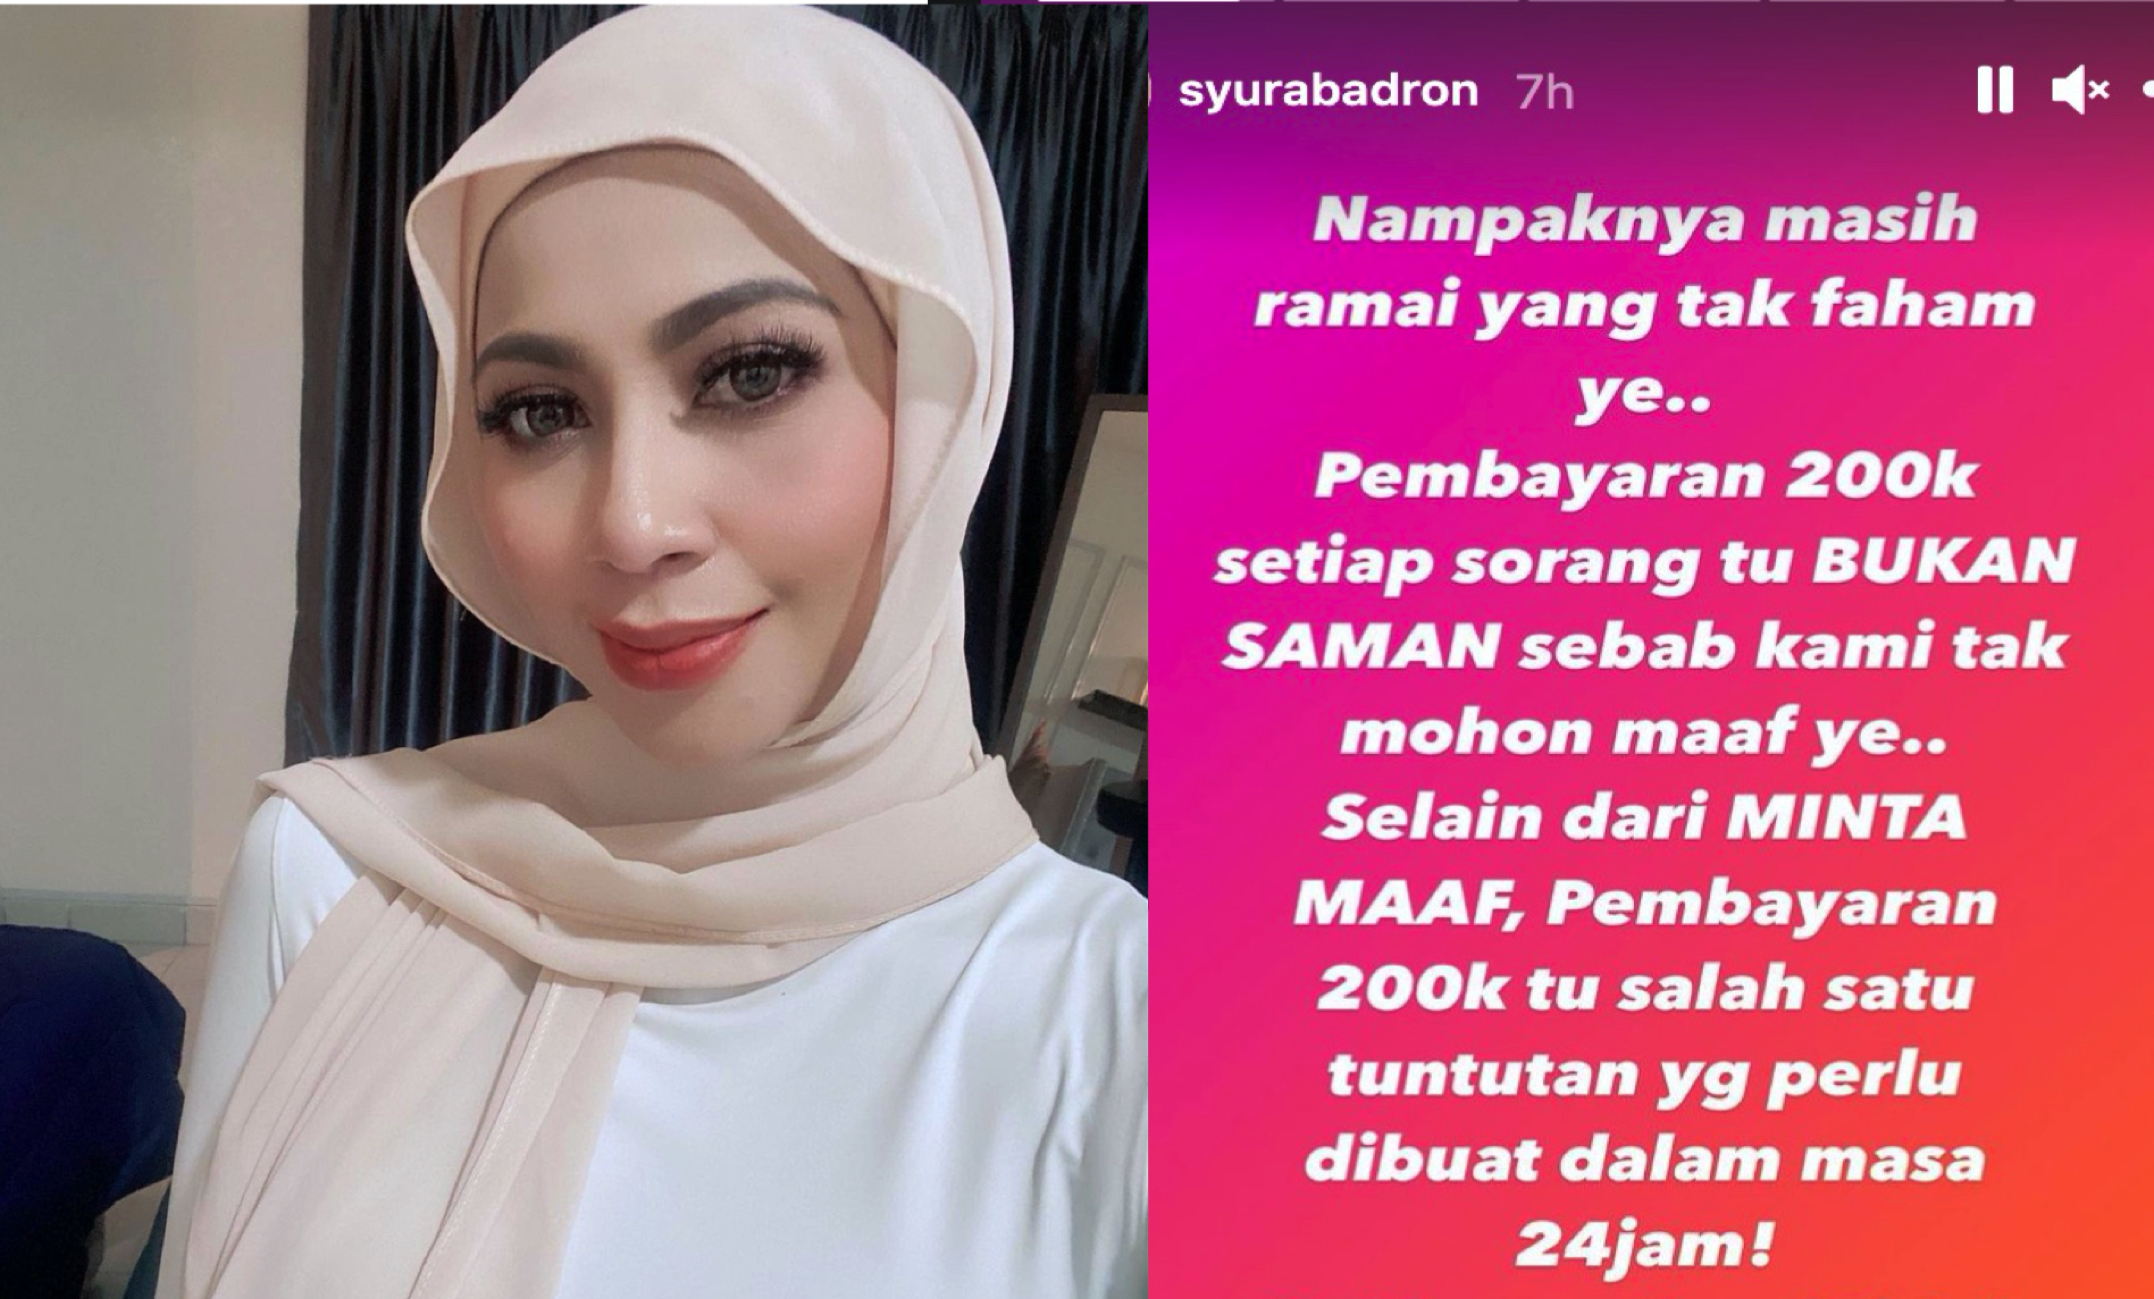 Bukan Saman, RM200 Ribu Salah Satu Tuntutan Dalam 24 Jam Selain Meminta Maaf!